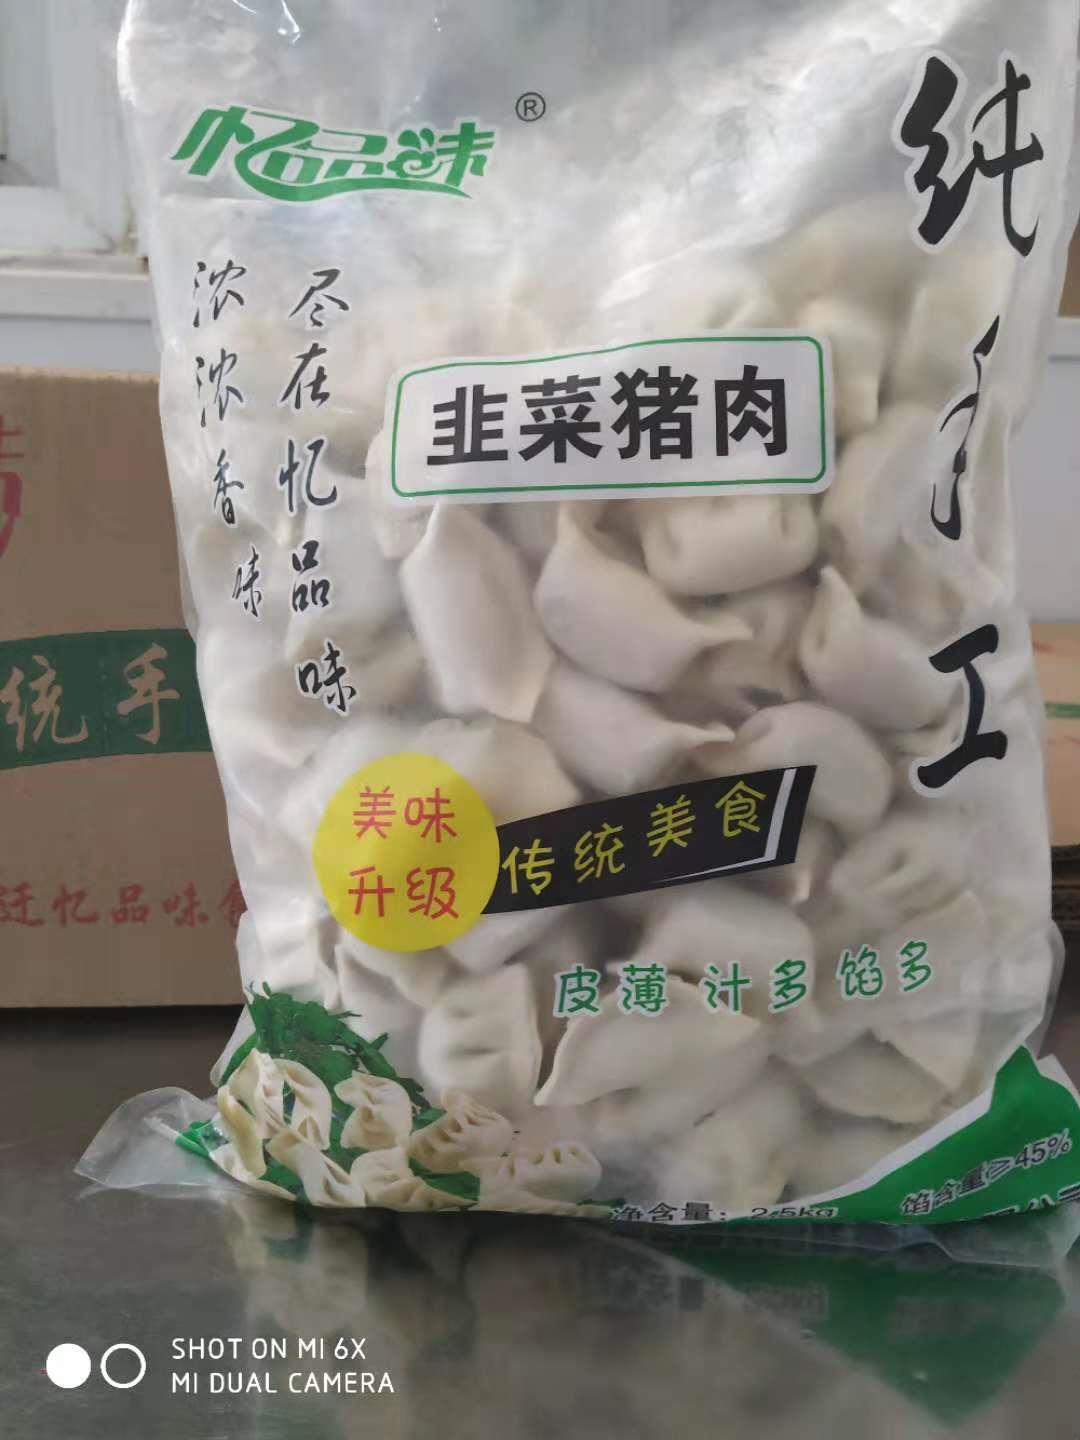 江苏纯手工水饺经销商 泗阳县忆品味食品有限公司